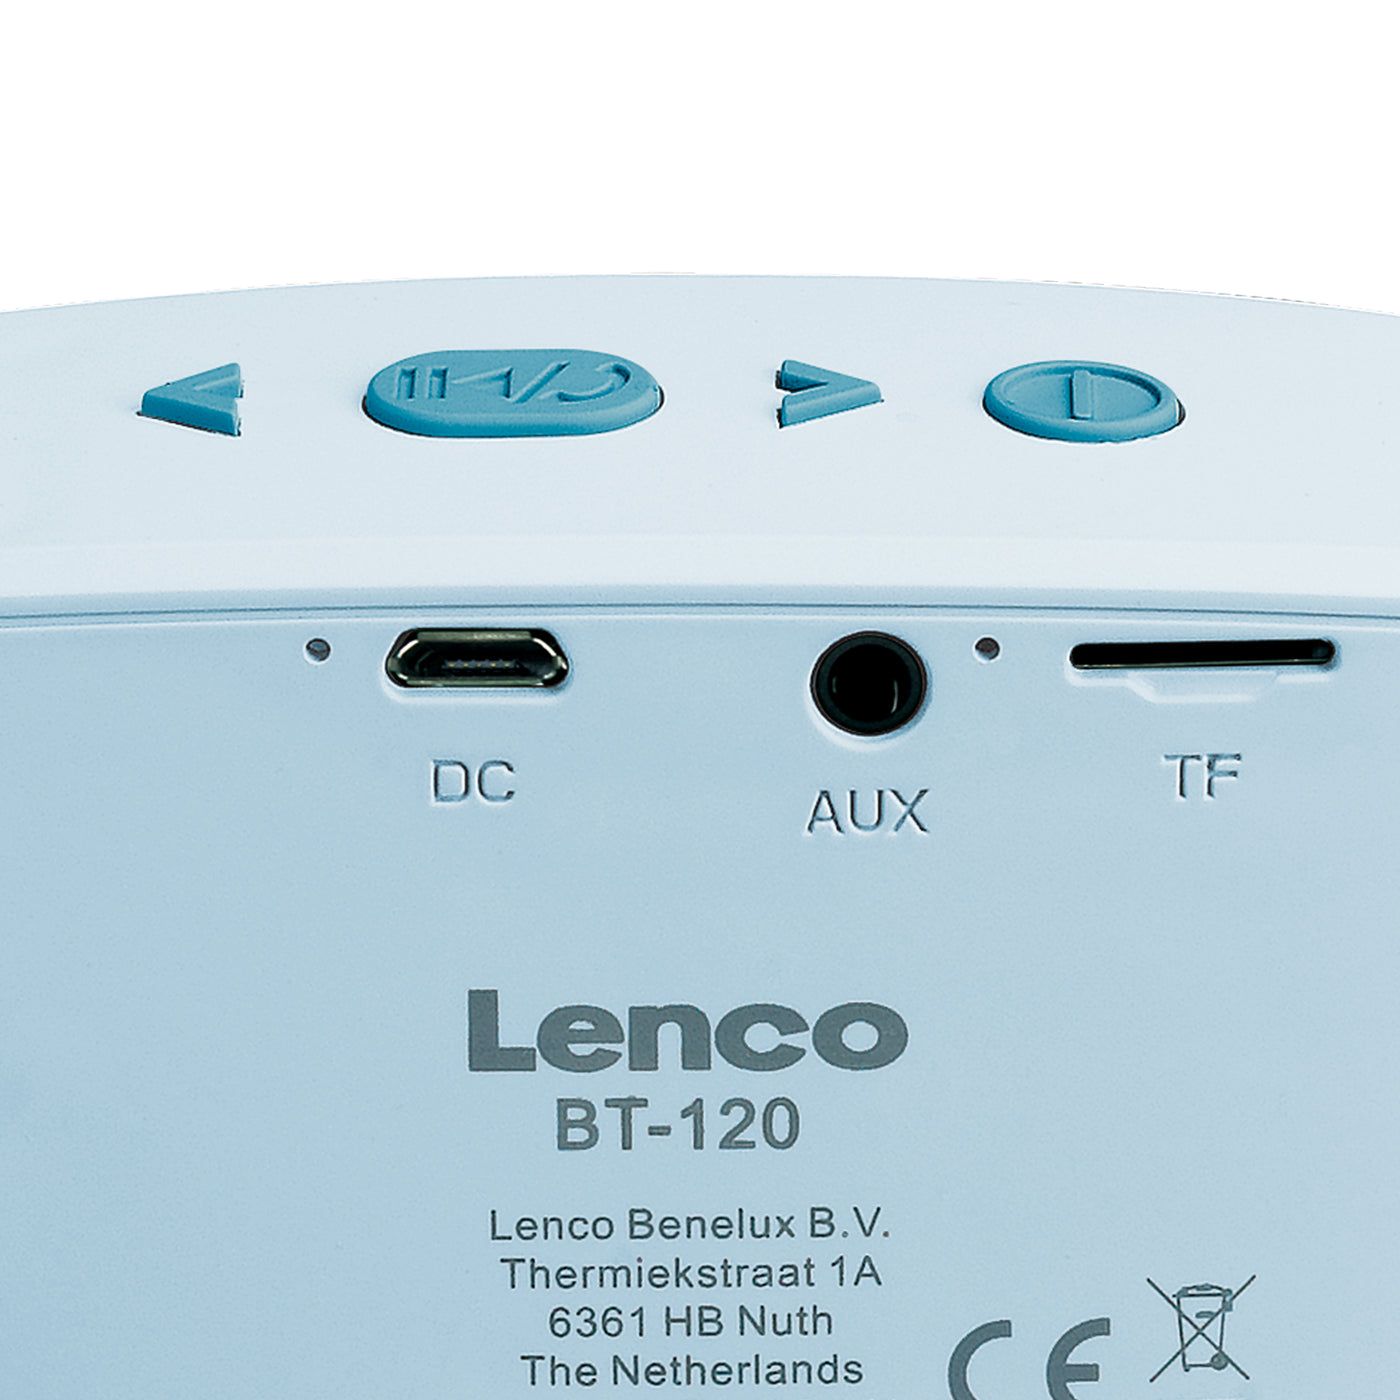 LENCO BT-120BU - Głośnik Bluetooth® o mocy wyjściowej 3 W i paskiem do noszenia - Niebieski